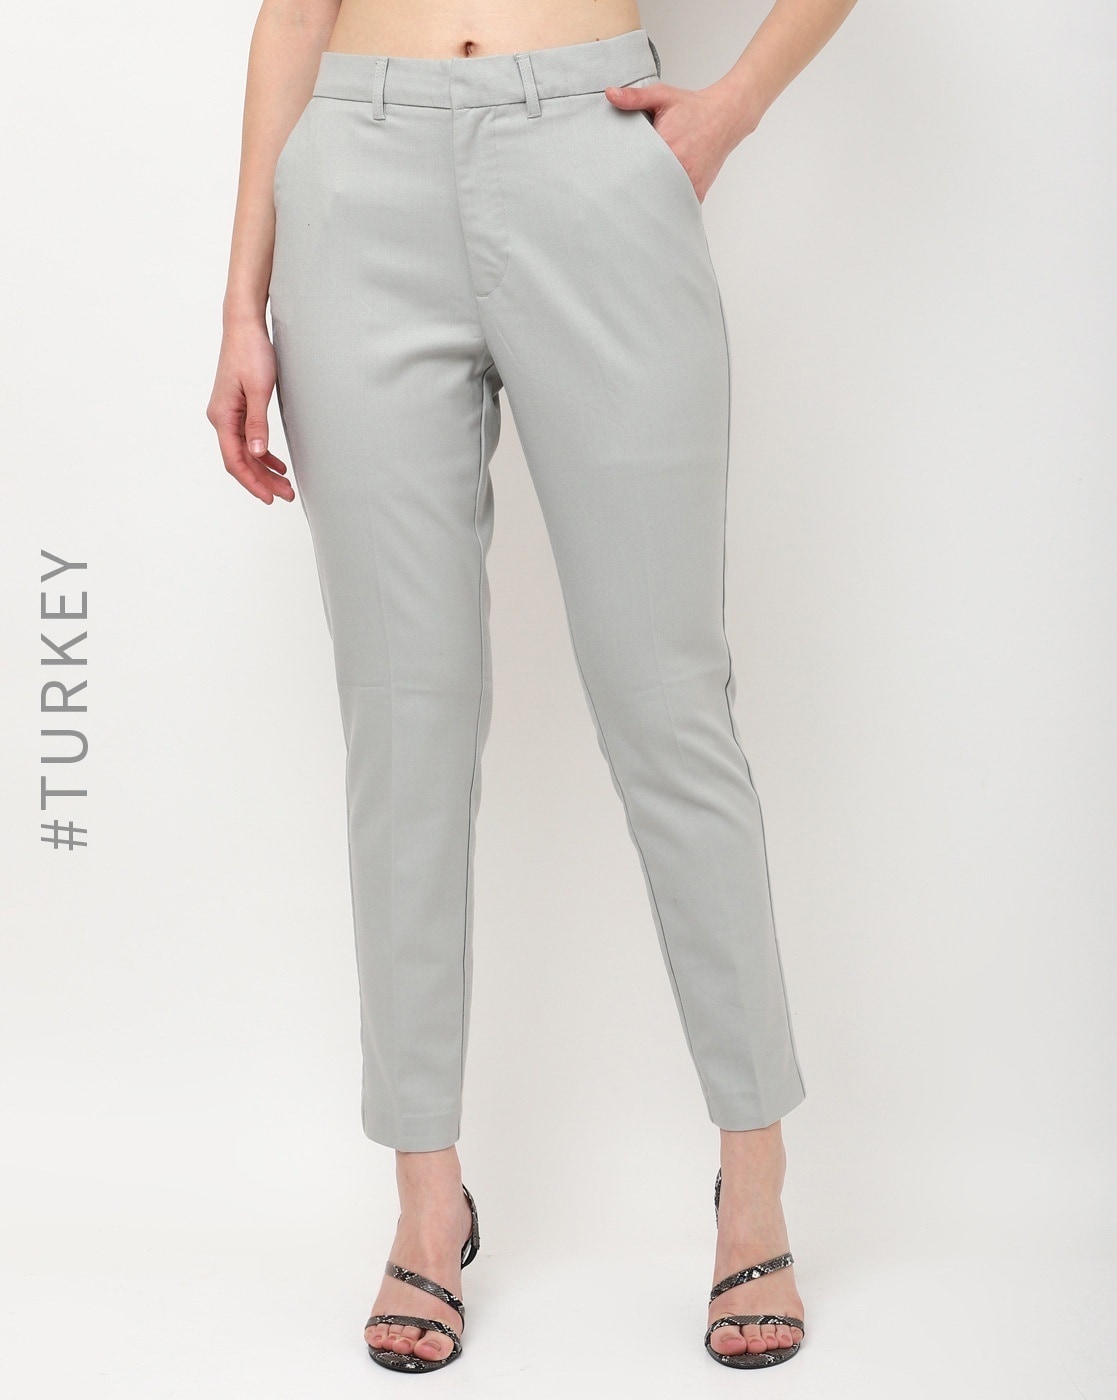 Buy Women Grey Textured Formal Regular Fit Trousers Online  764227  Van  Heusen